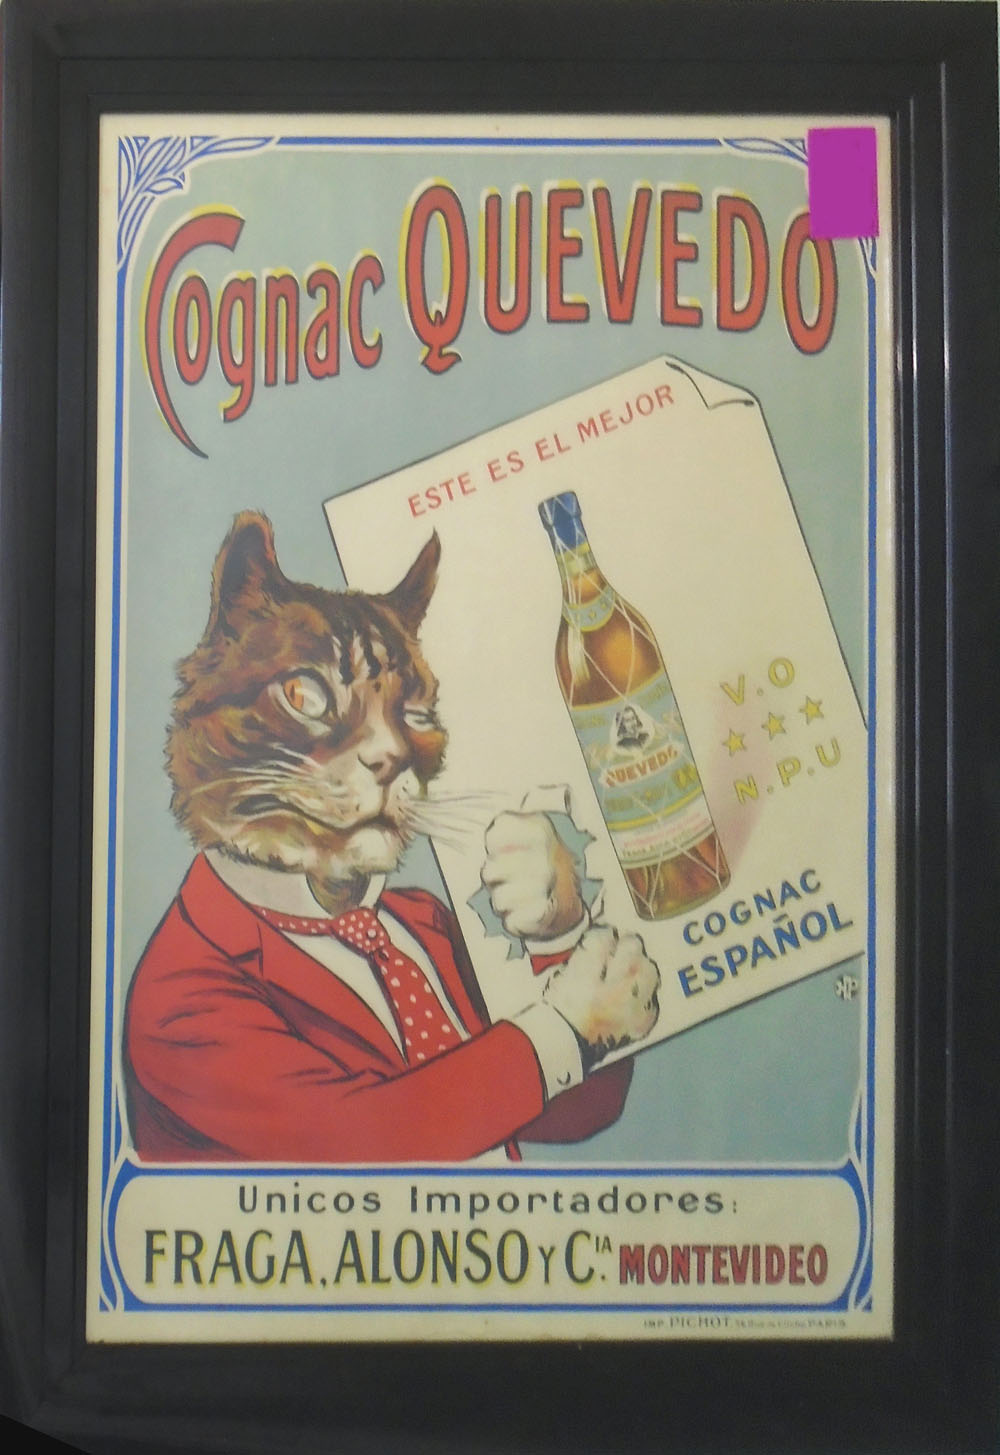 PICHOT PARIS 'COGNAC QUEVEDO', original lithographic poster, 58cm x 78cm, framed.